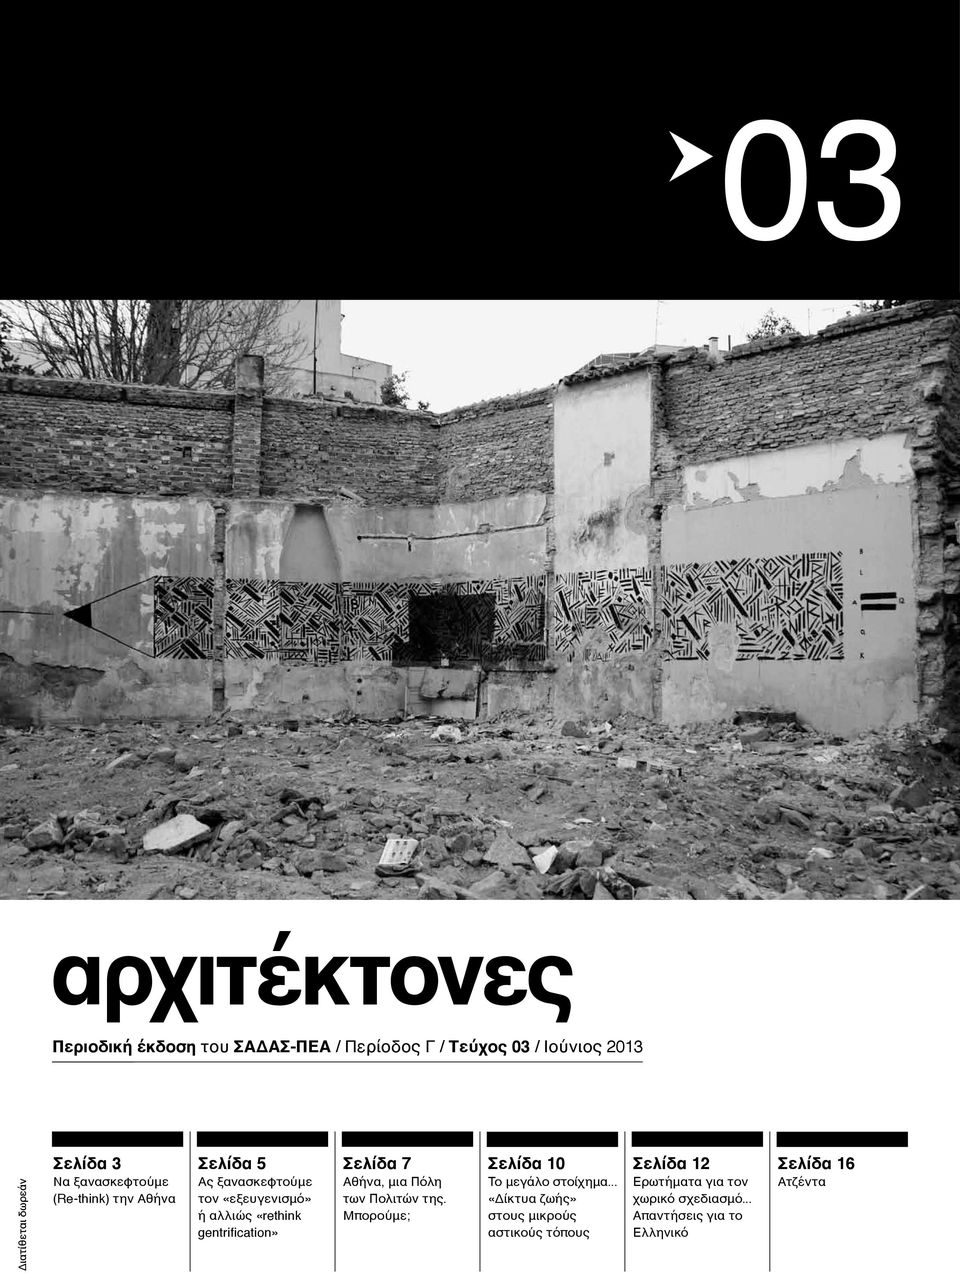 gentrification» Σελίδα 7 Αθήνα, μια Πόλη των Πολιτών της. Μπορούμε; Σελίδα 10 Το μεγάλο στοίχημα.